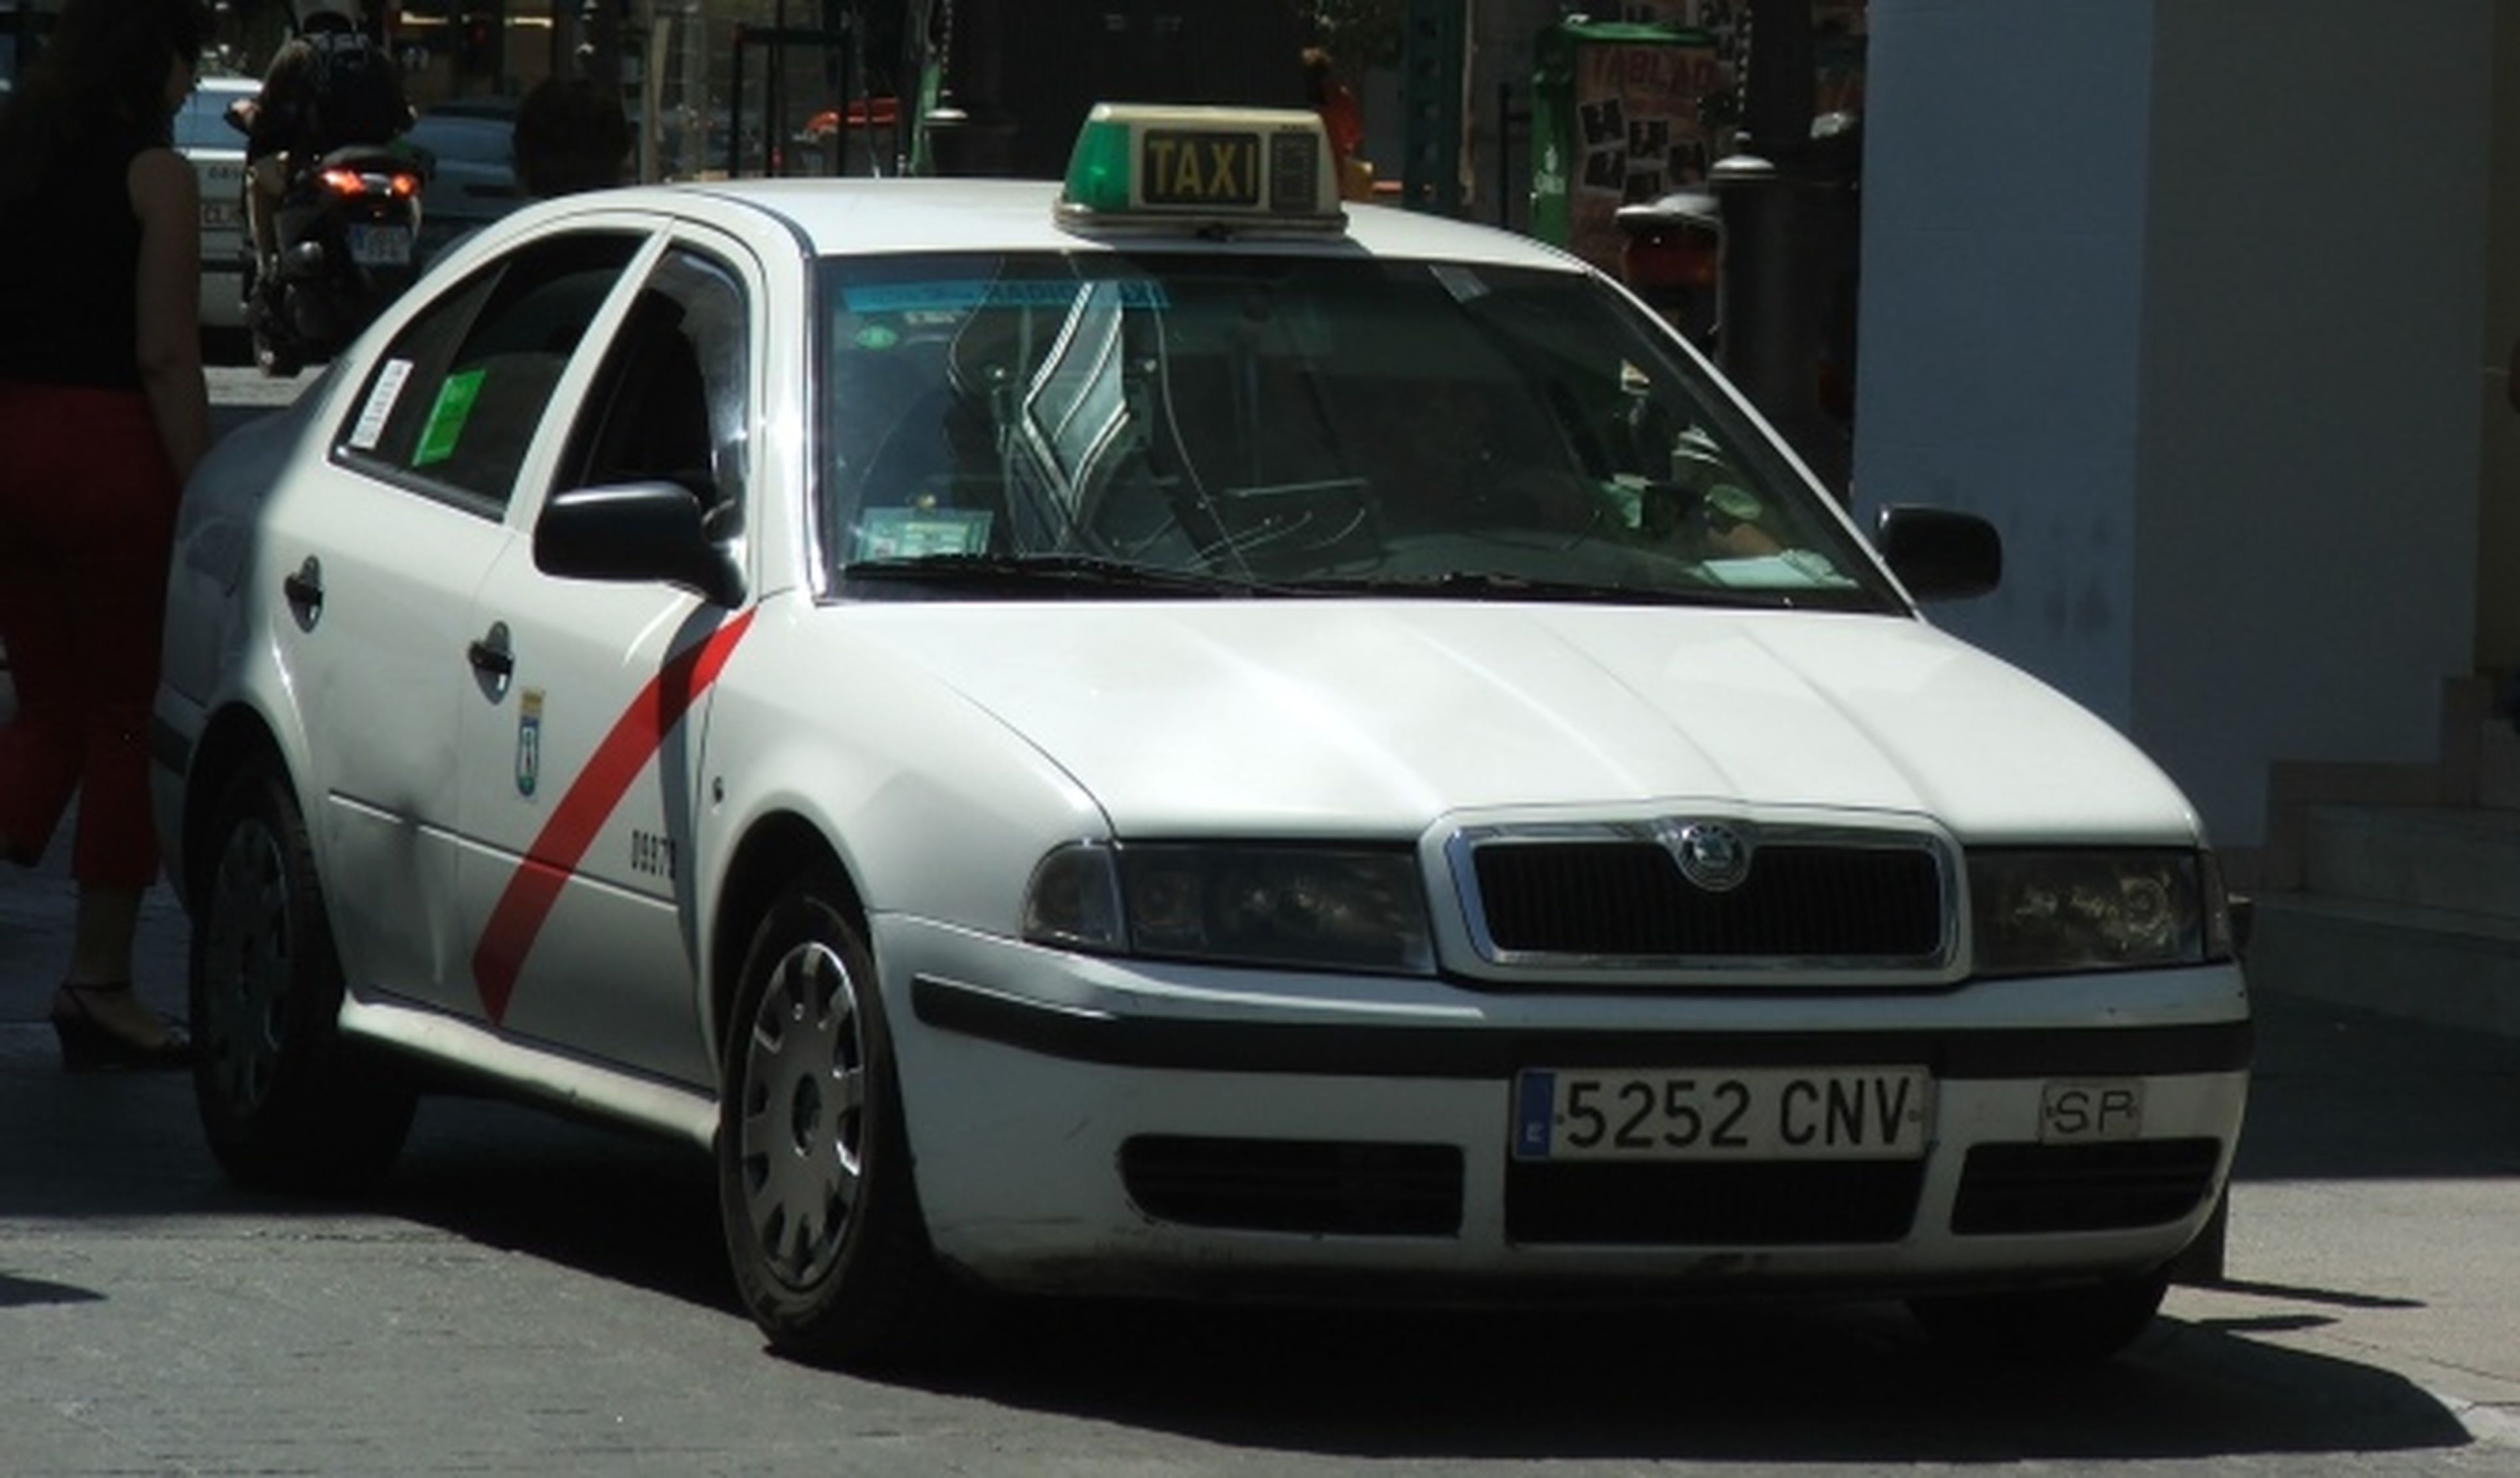 Así es la reventa ilegal de taxis en Madrid